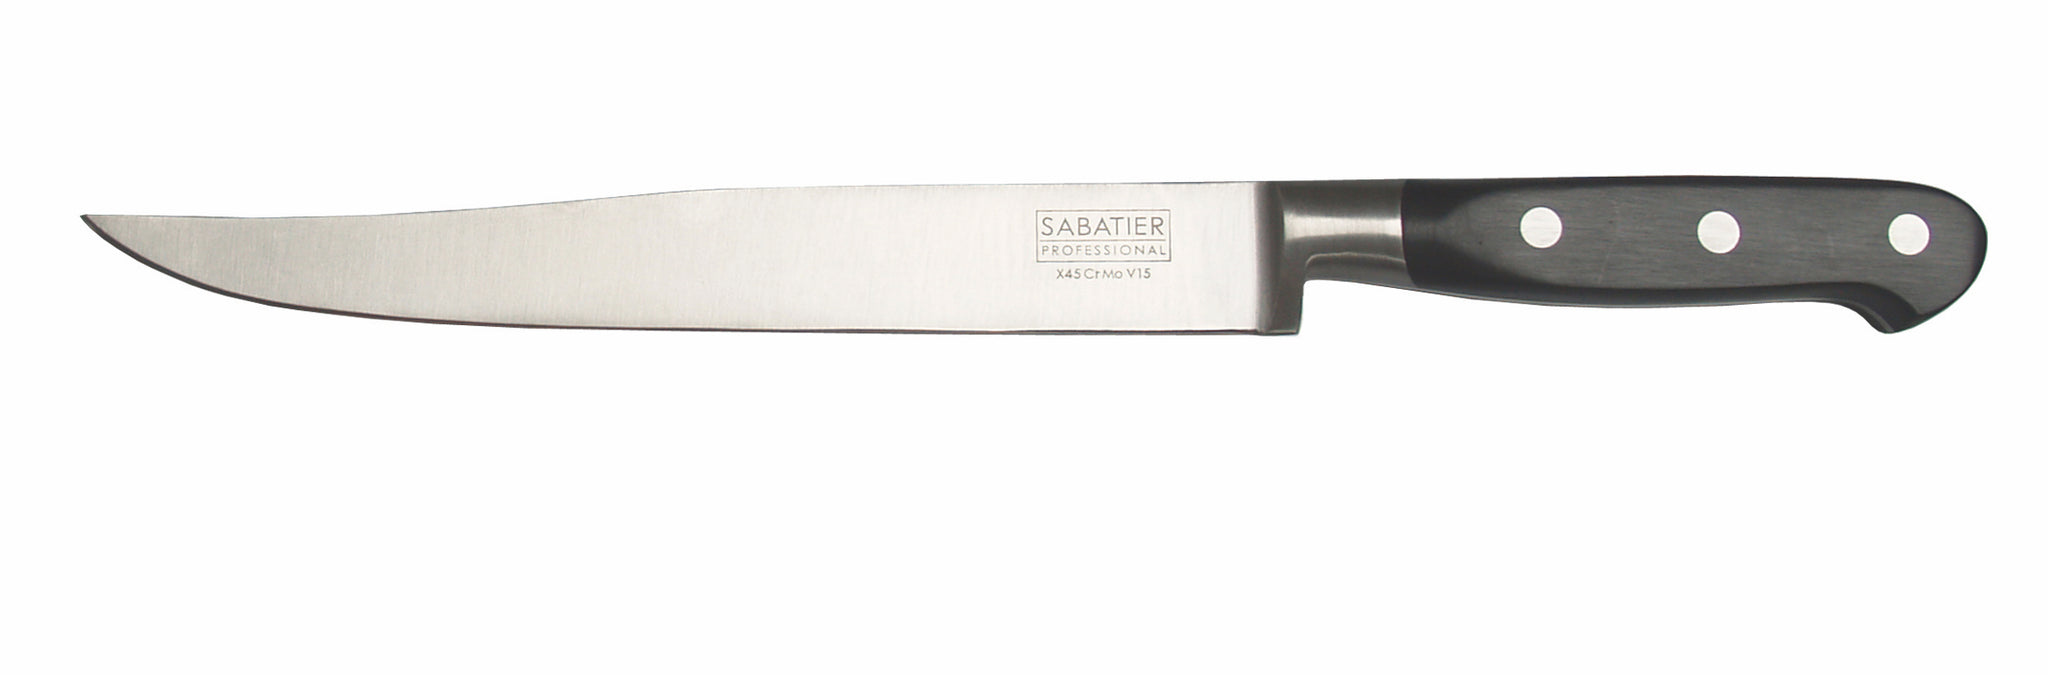 Sabatier 8 Inch Carving Knife